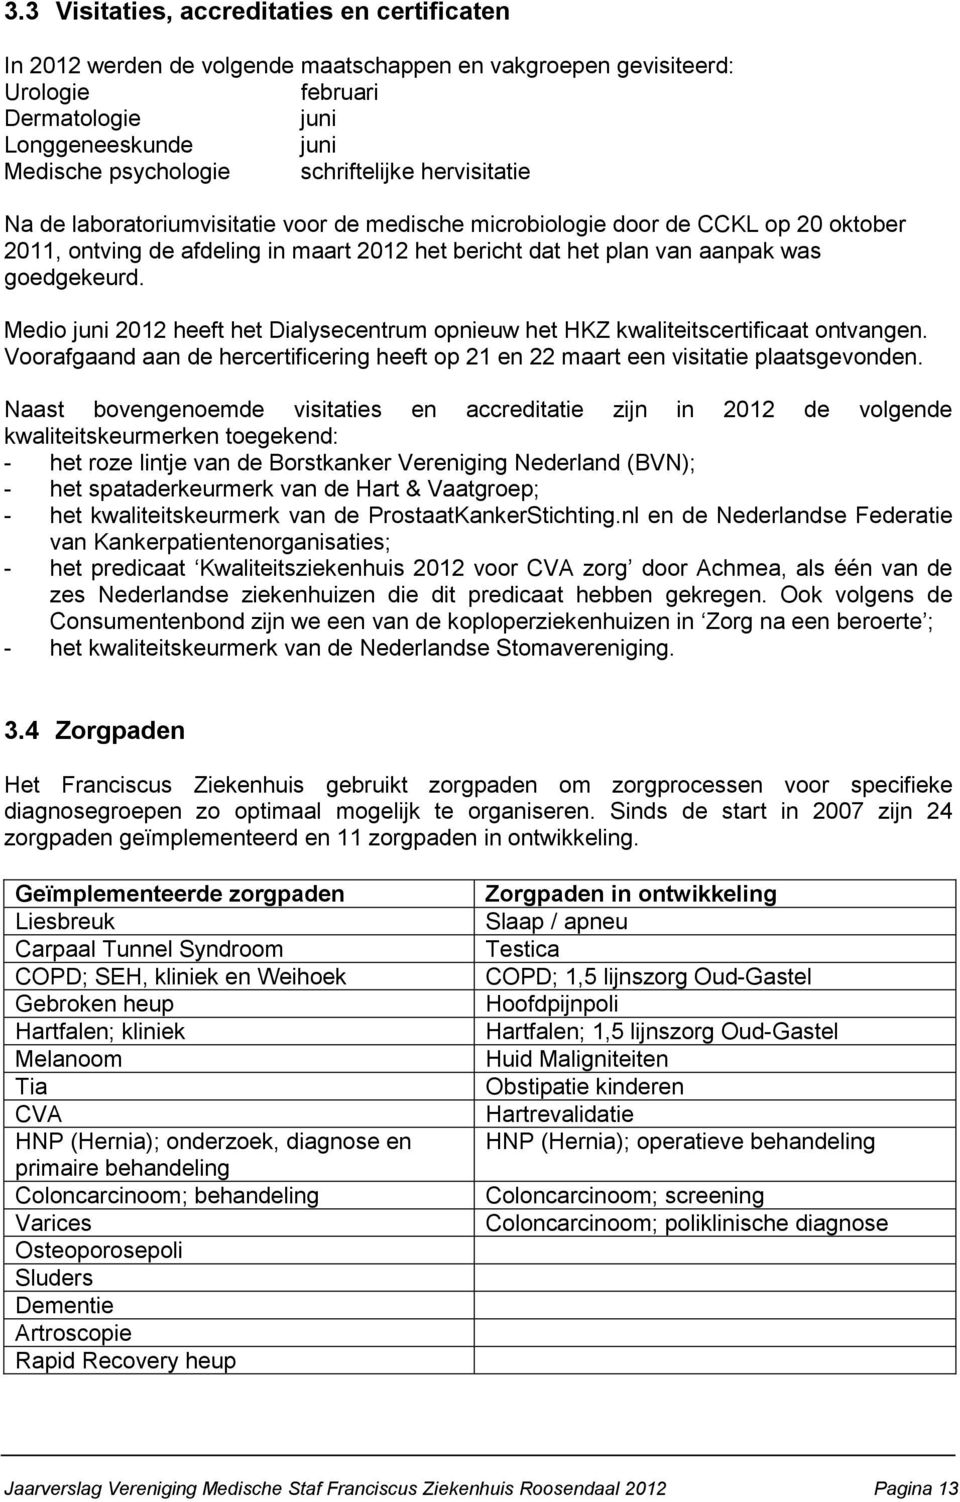 goedgekeurd. Medio juni 2012 heeft het Dialysecentrum opnieuw het HKZ kwaliteitscertificaat ontvangen. Voorafgaand aan de hercertificering heeft op 21 en 22 maart een visitatie plaatsgevonden.